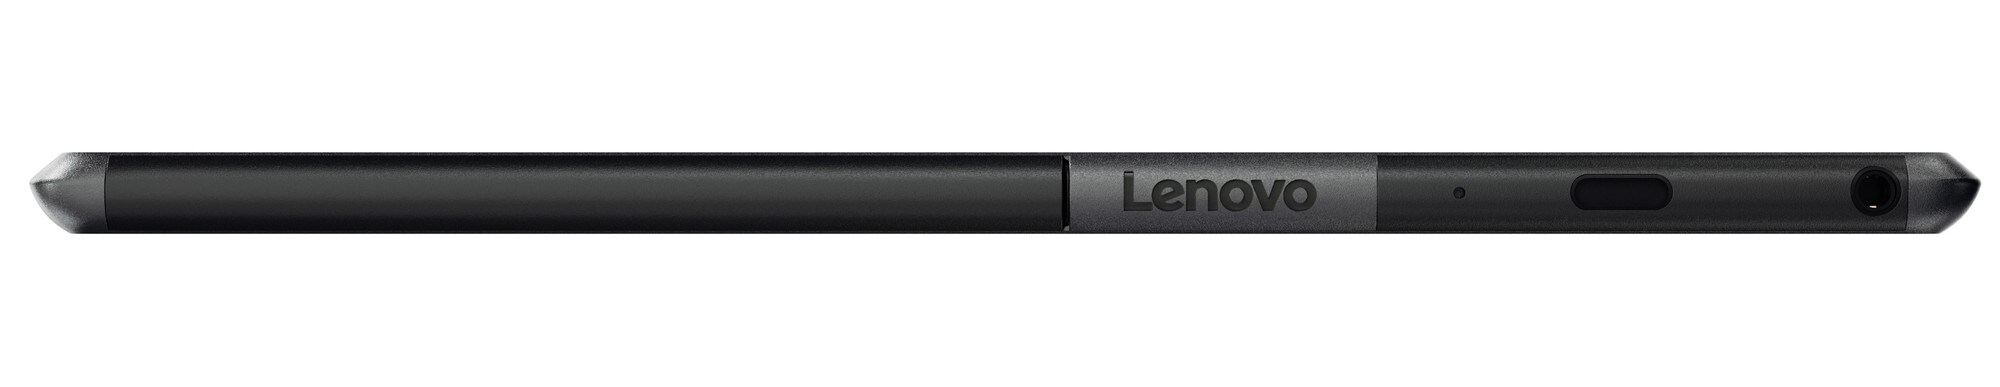 Lenovo Tab4 10 Plus tablet 64 GB WiFi (musta) - Tabletit ja iPad - Gigantti